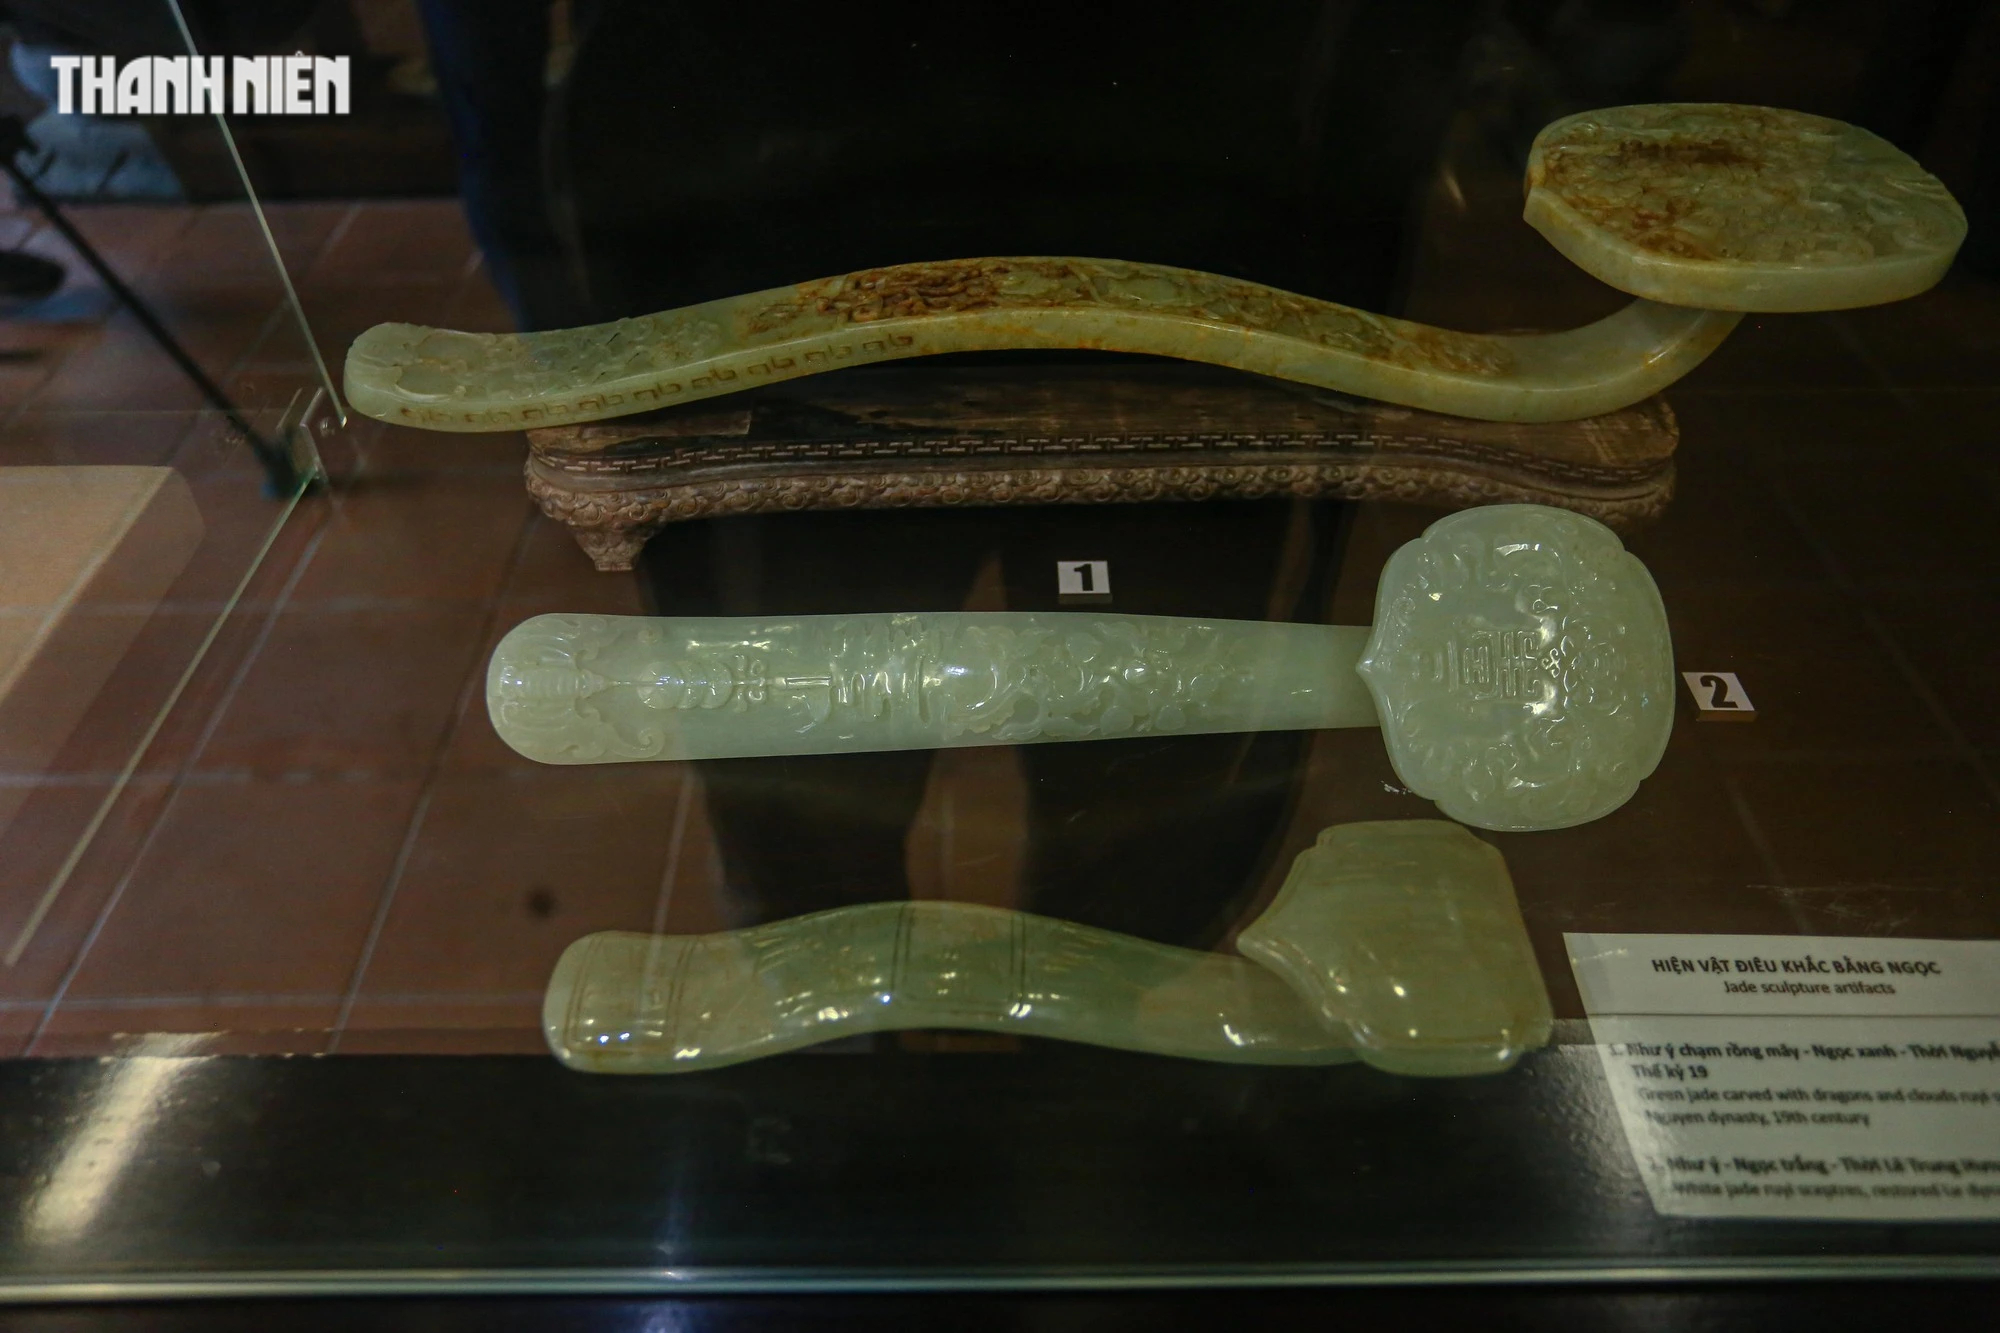 Chiêm ngưỡng hơn 70 món ngọc quý thời Nguyễn đang được trưng bày tại Huế - Ảnh 6.